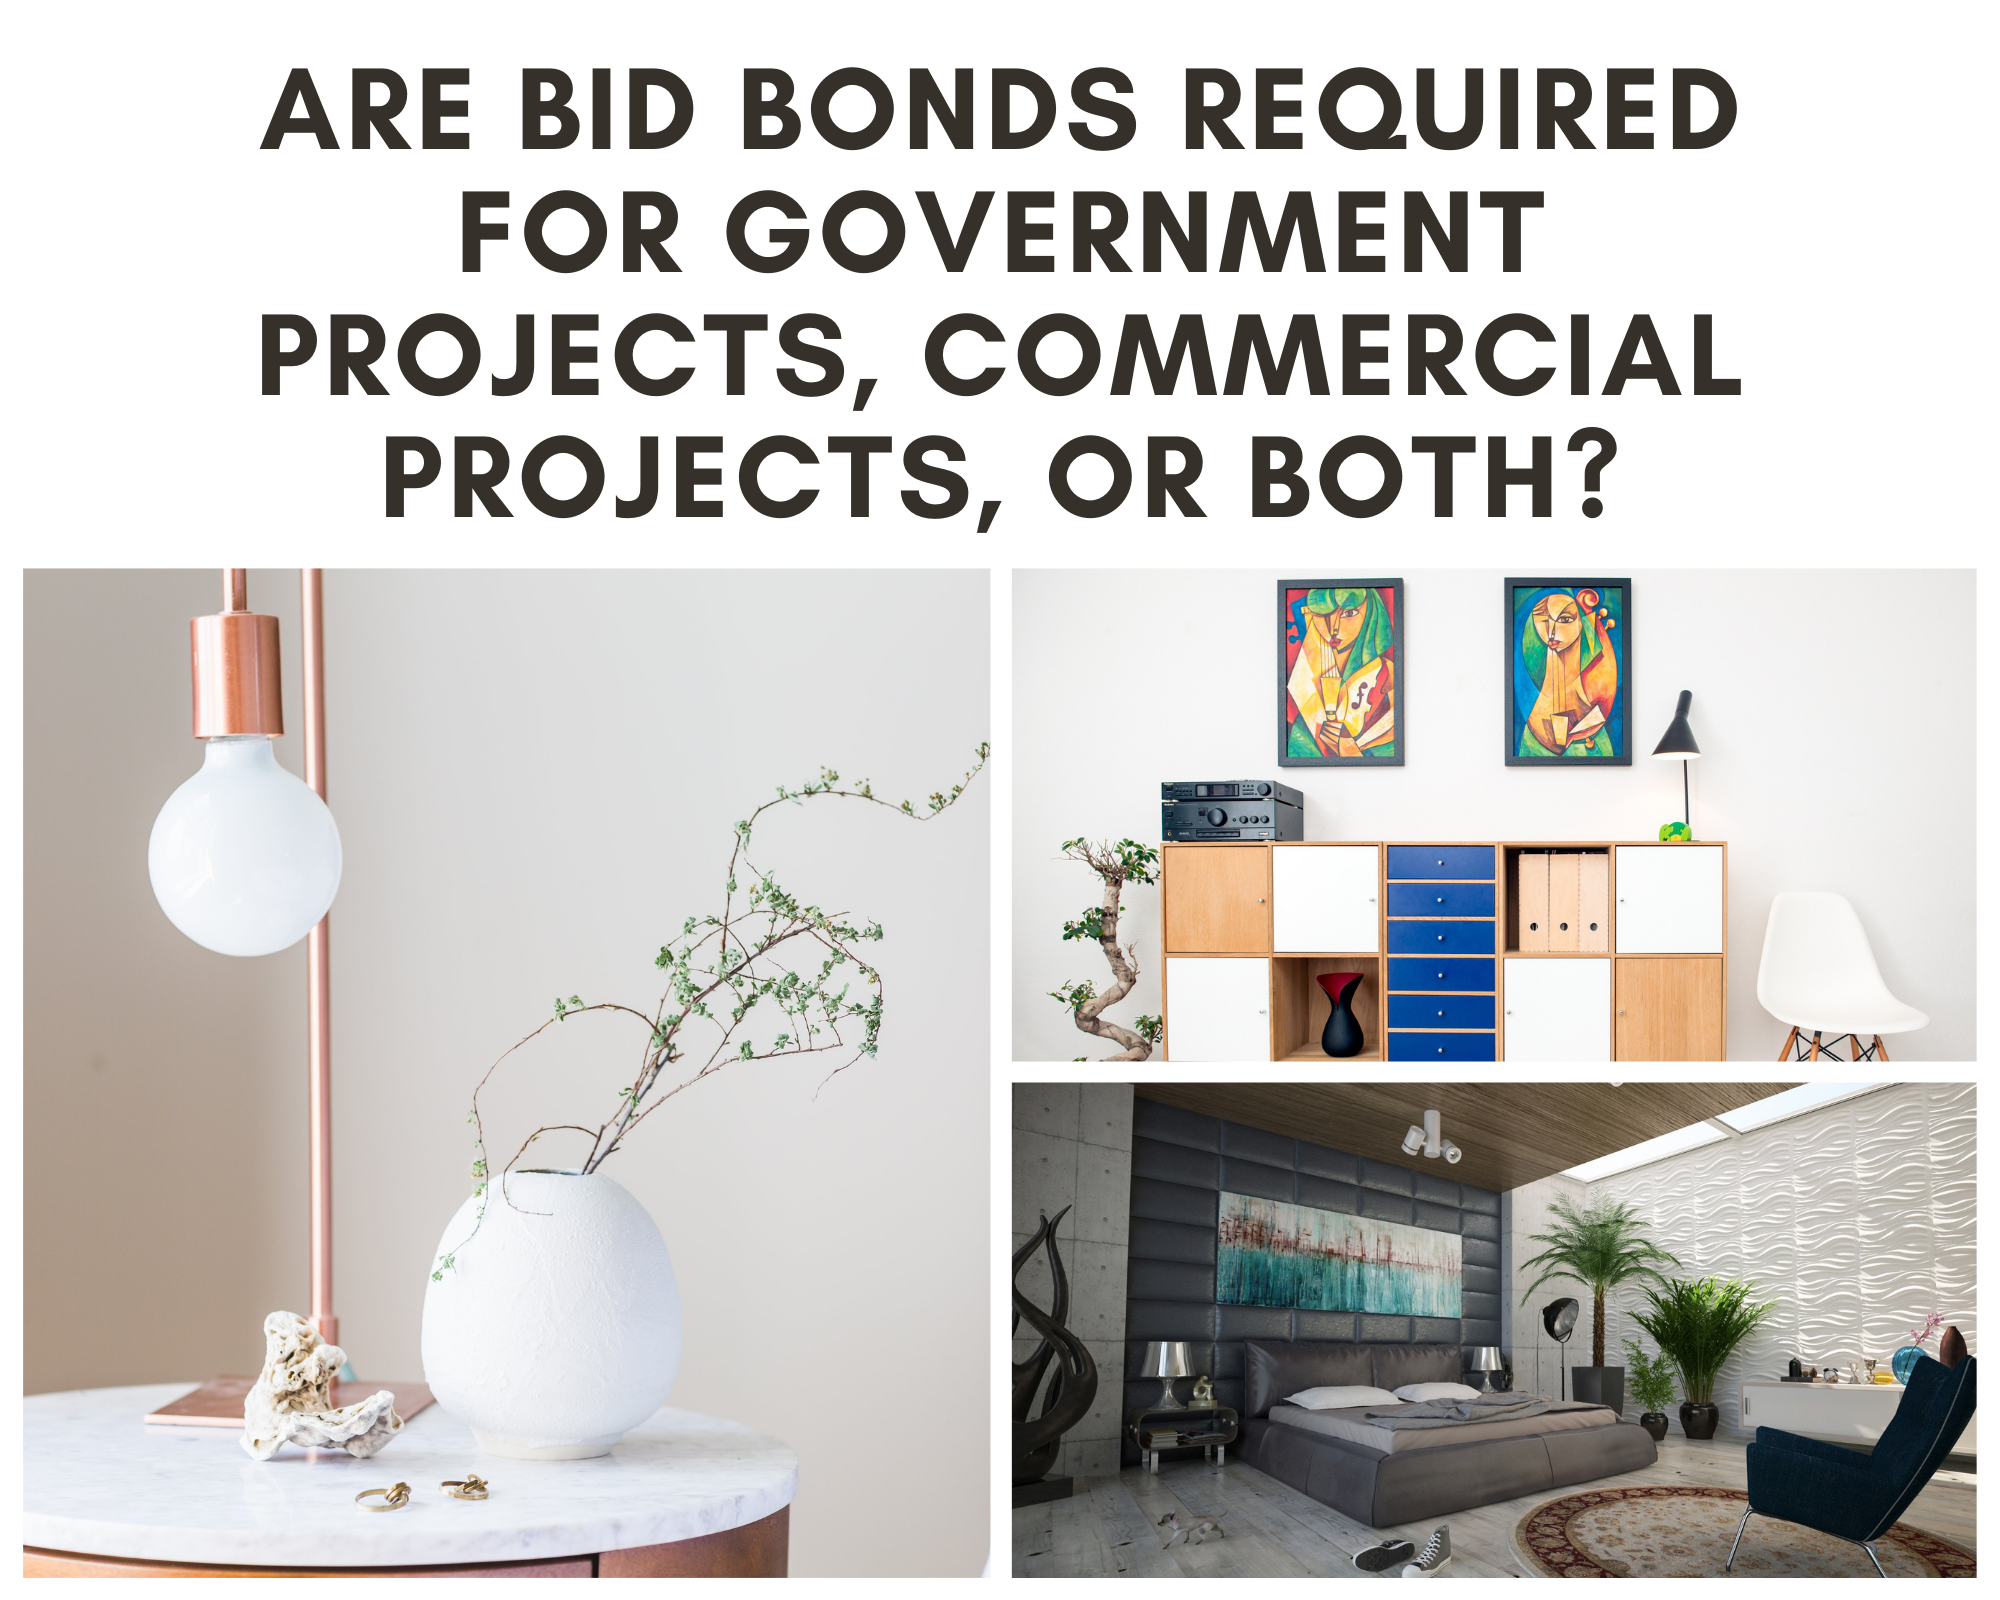 bid bonds - are bid bonds required for private projects - home interior design